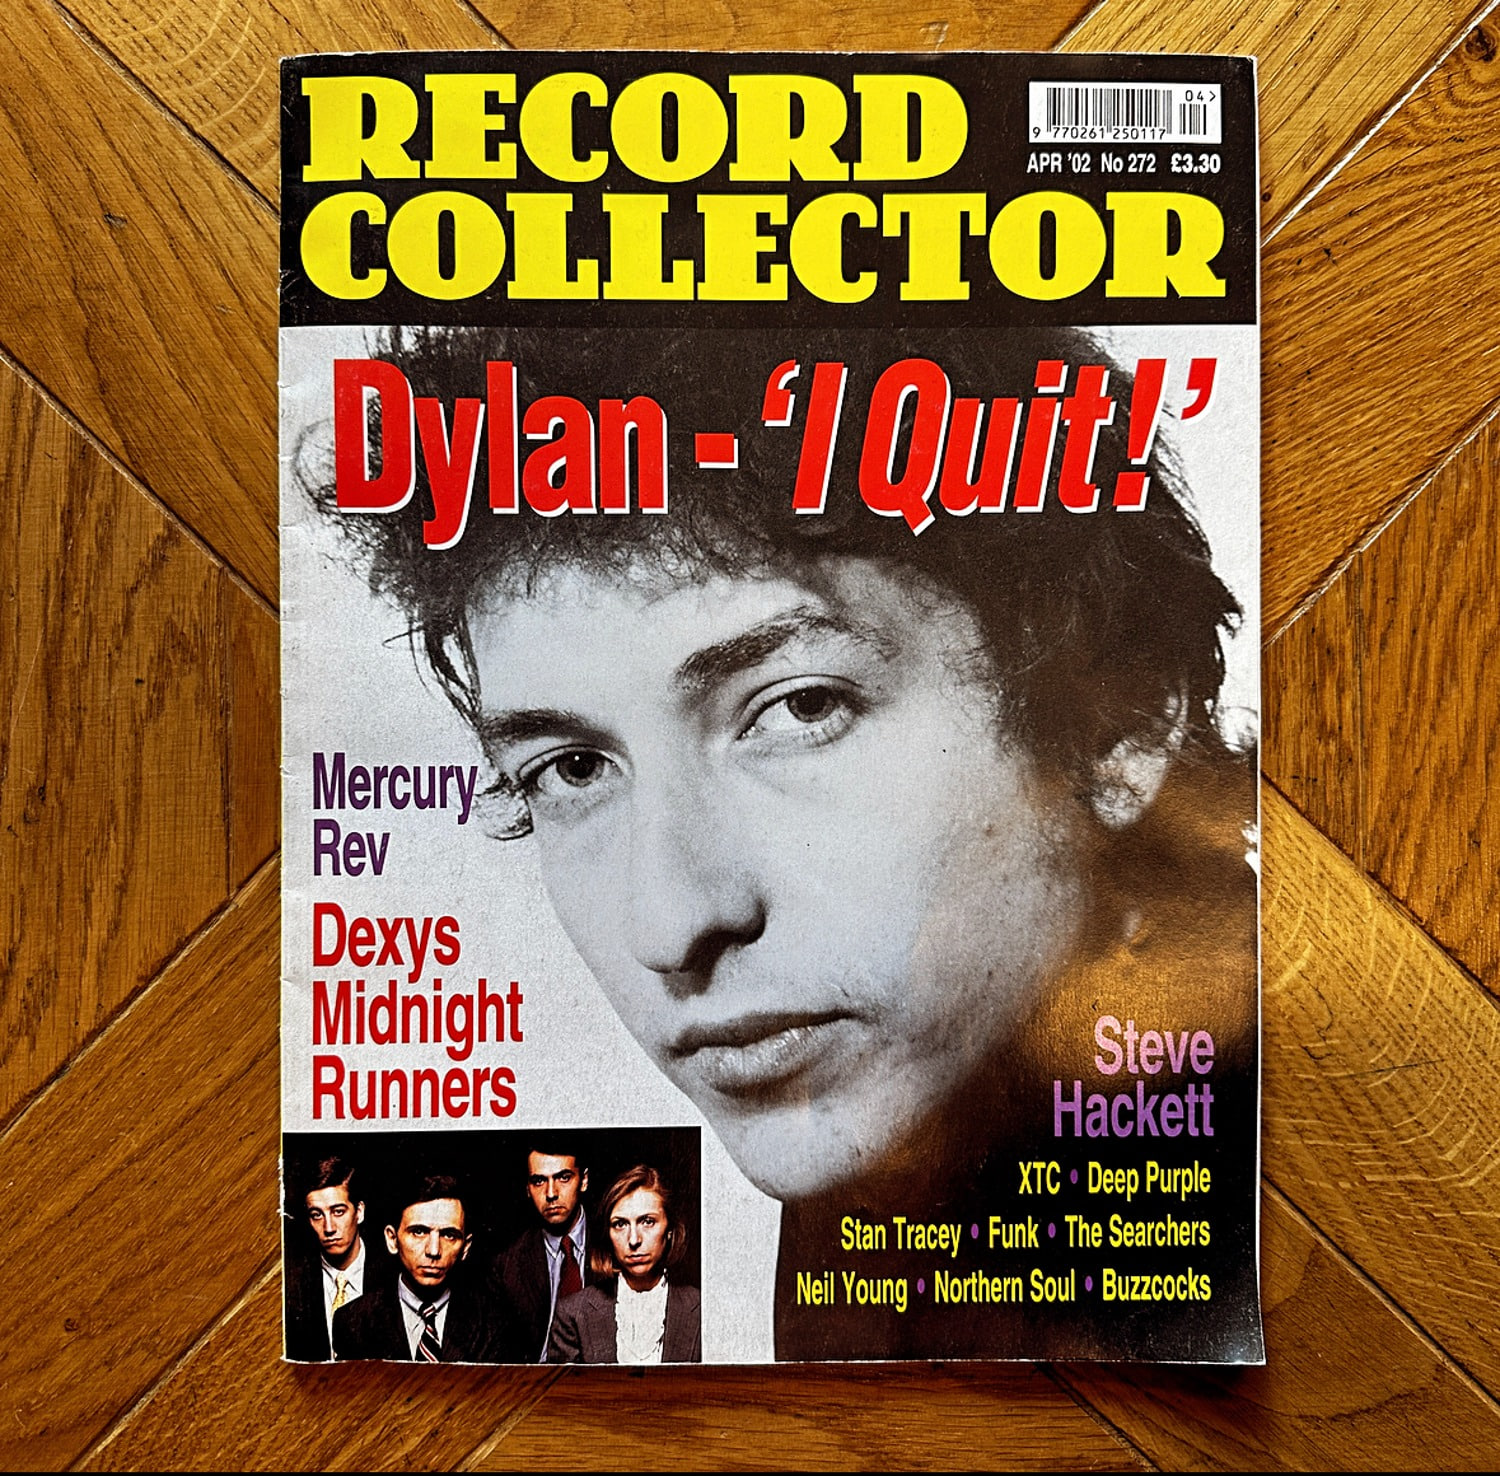 체리드라이버RECORD COLLECTOR (Dylan, uk) magazine